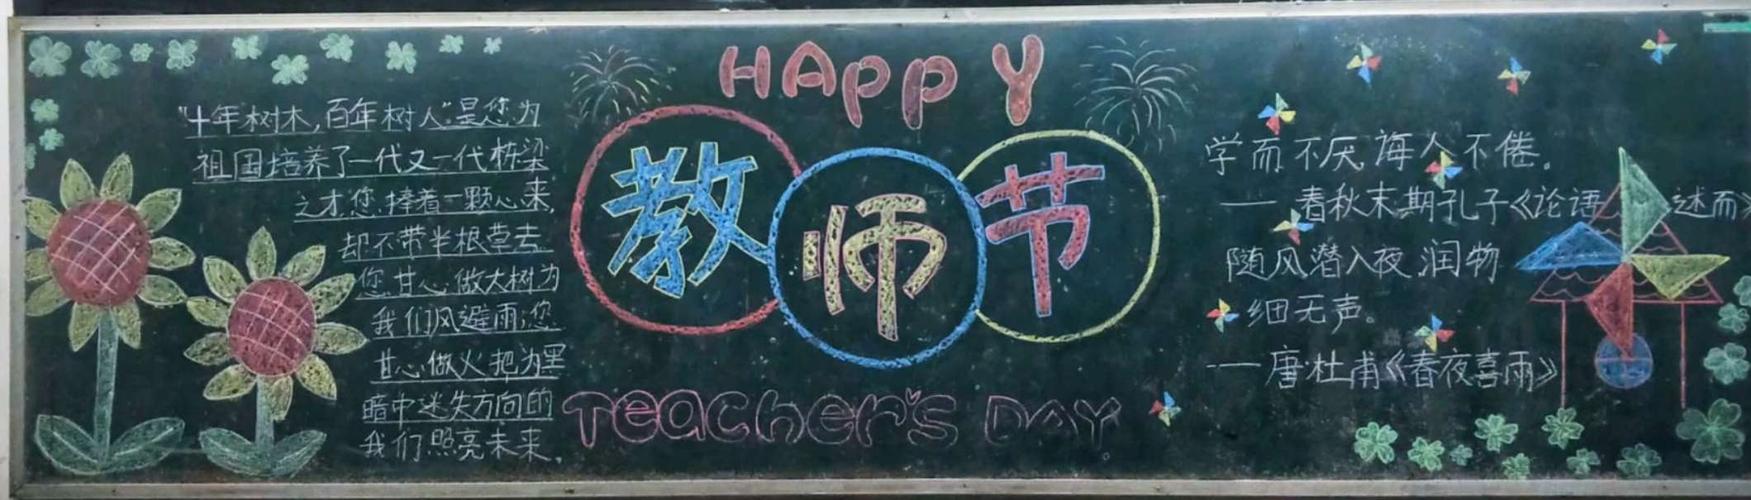 各班制作了庆祝教师节为主题的黑板报增添了节日气氛.